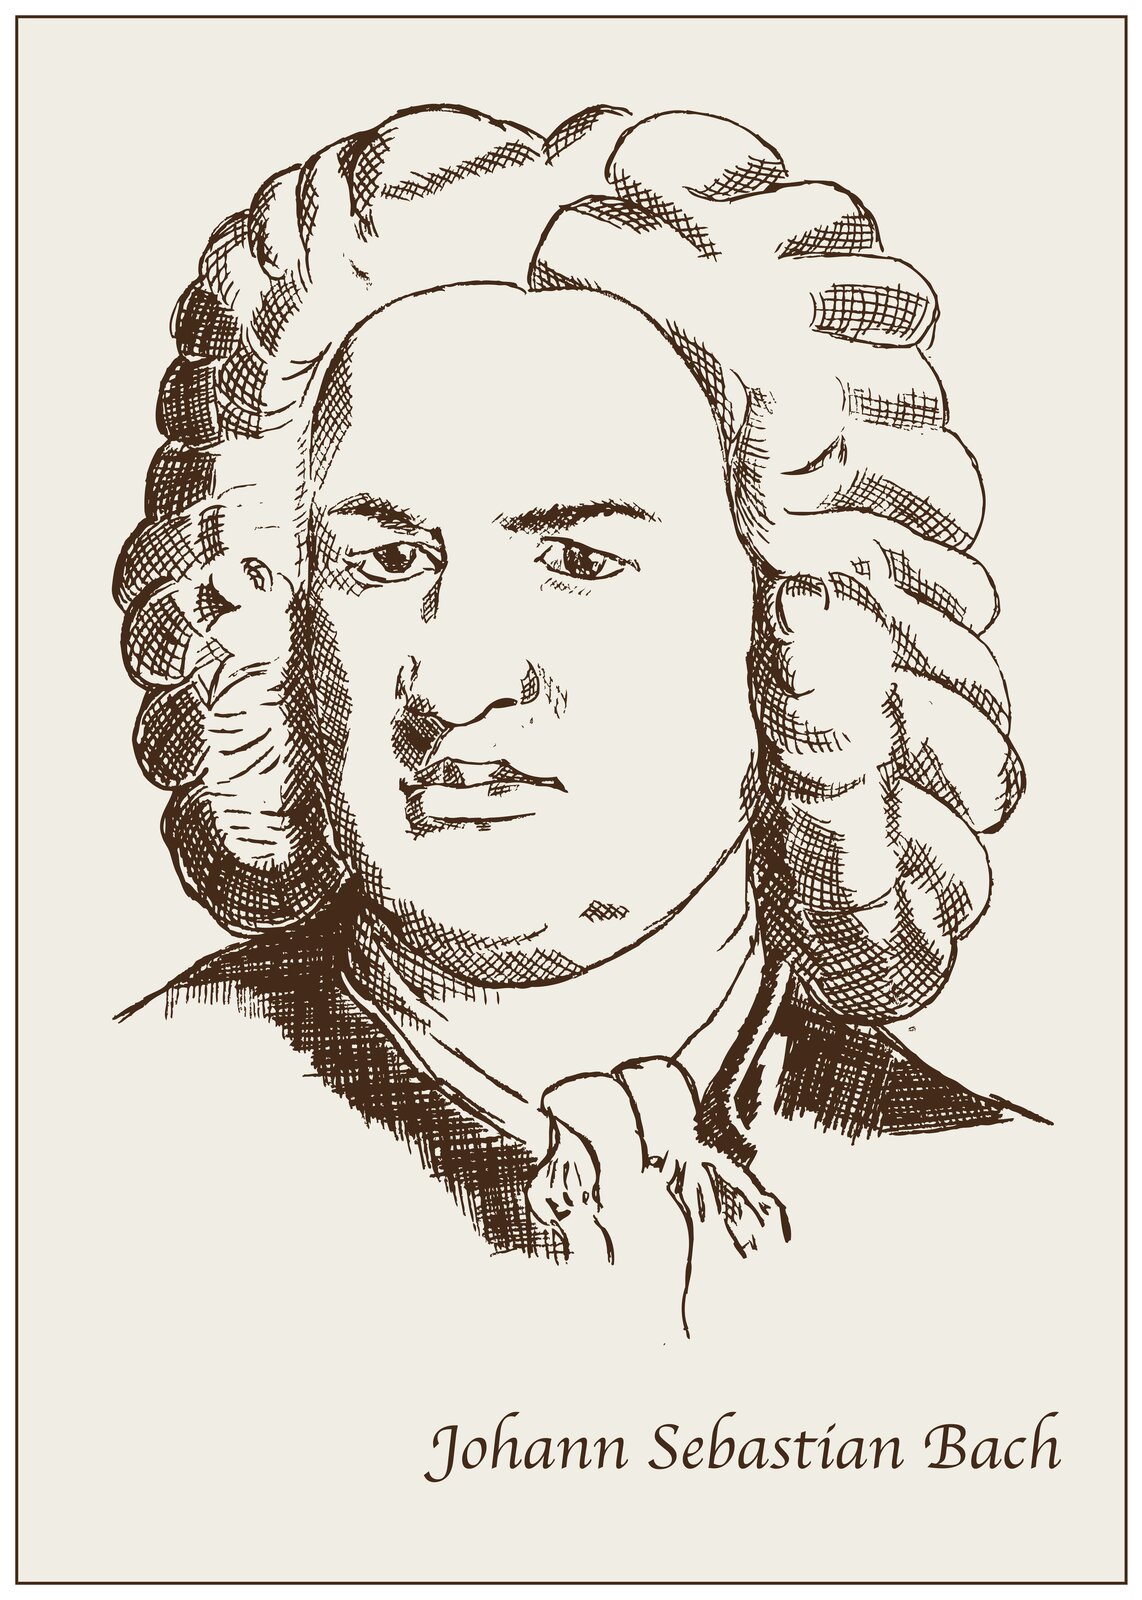 Ilustracja przedstawia portret rysunkowy Jana Sebastiana Bacha. Jest on czarno-biały i uproszczony. Kompozytor ma na głowie perukę o długich, kręconych włosach. Na dole widnieje napis Johann Sebastian Bach.